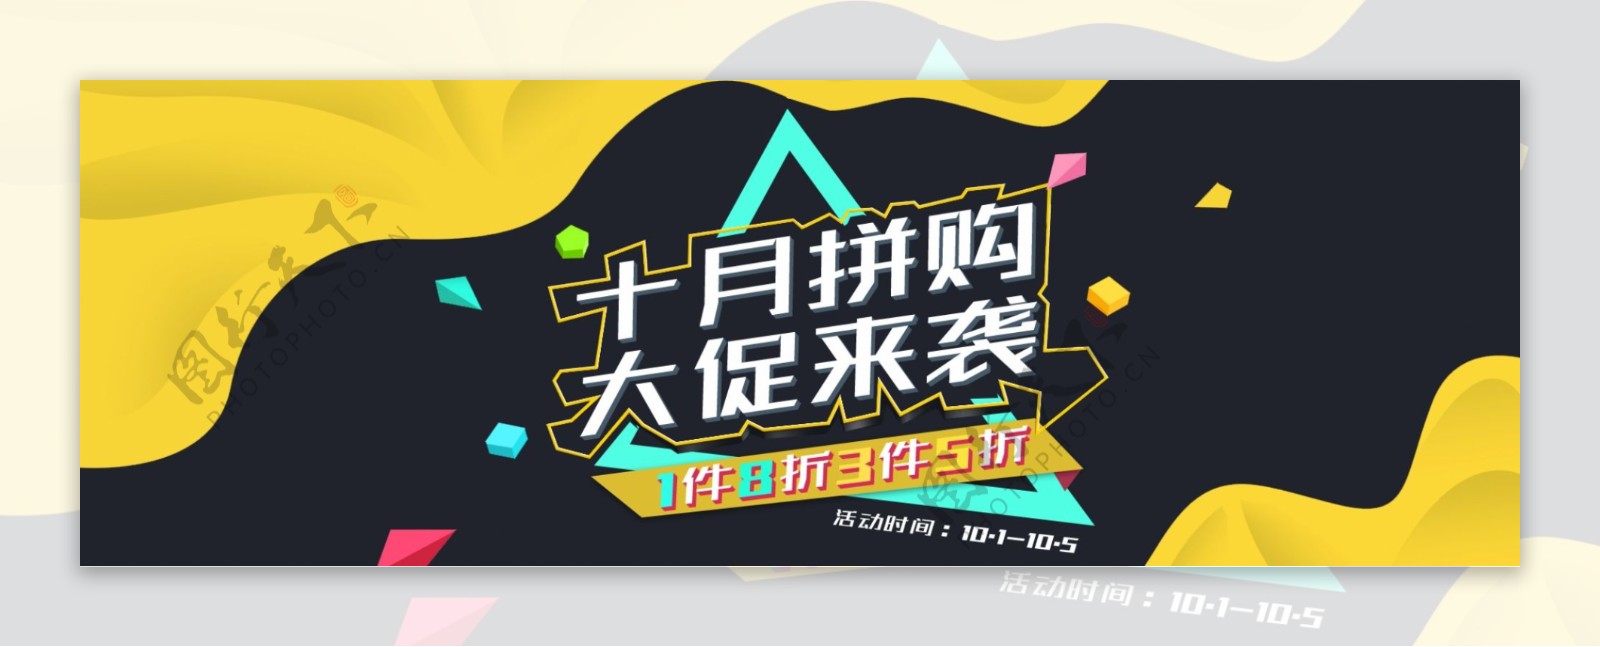 淘宝天猫电商数码家电电器城焕新季十月海报banner模板设计